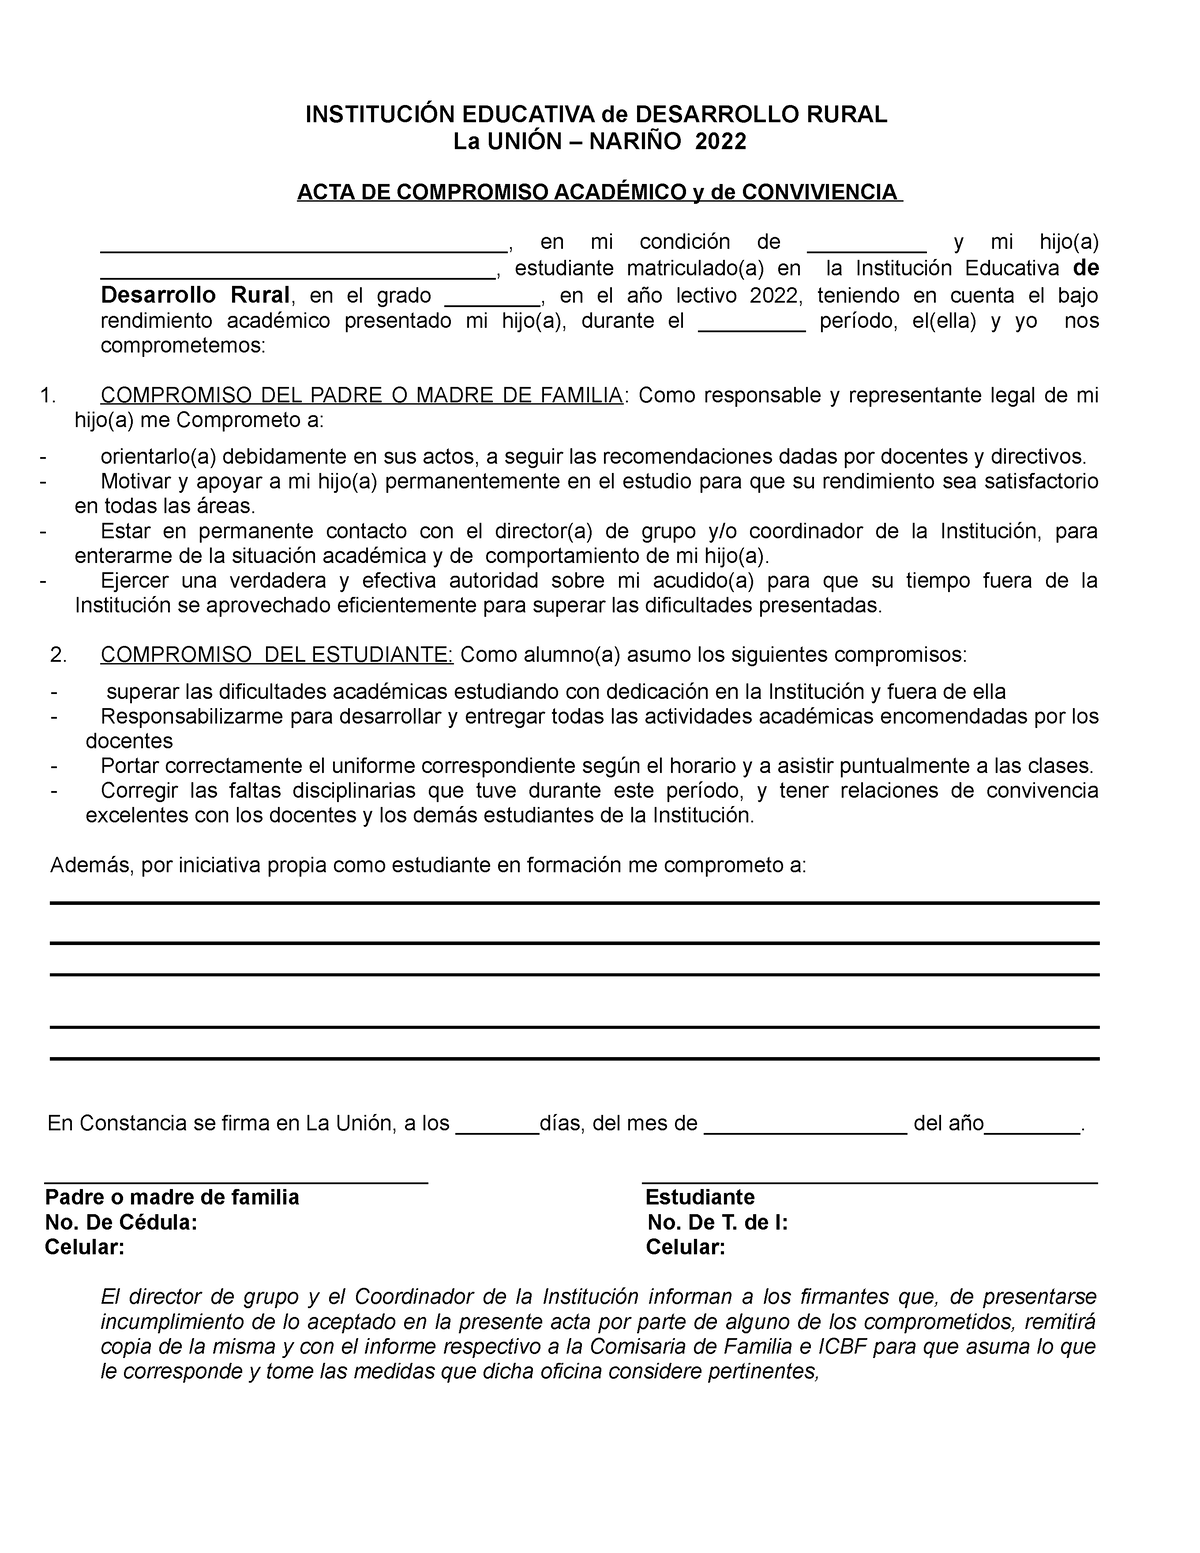 Actas de compromiso Academico - INSTITUCIÓN EDUCATIVA de DESARROLLO RURAL  La UNIÓN – NARIÑO 2022 - Studocu